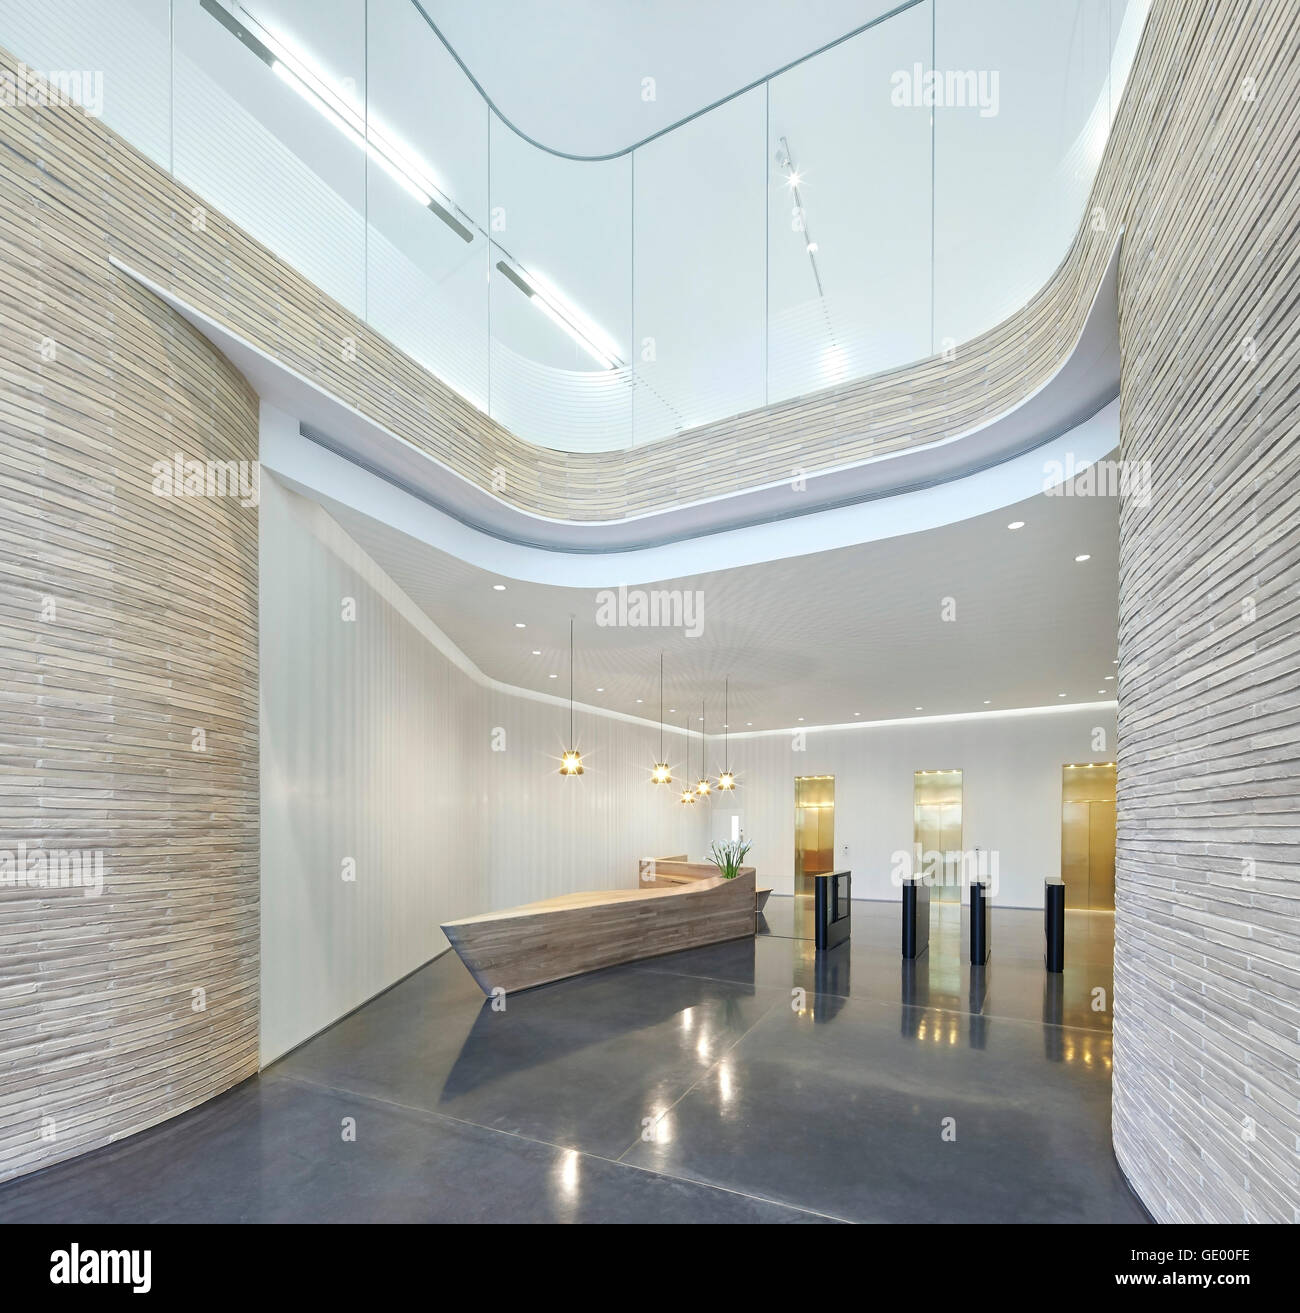 L'atrium d'entrée avec barrière de sécurité et Ascenseur Hall avec salon. Turnmill Building, Londres, Royaume-Uni. Architecte : Piercy & Company, 2015. Banque D'Images